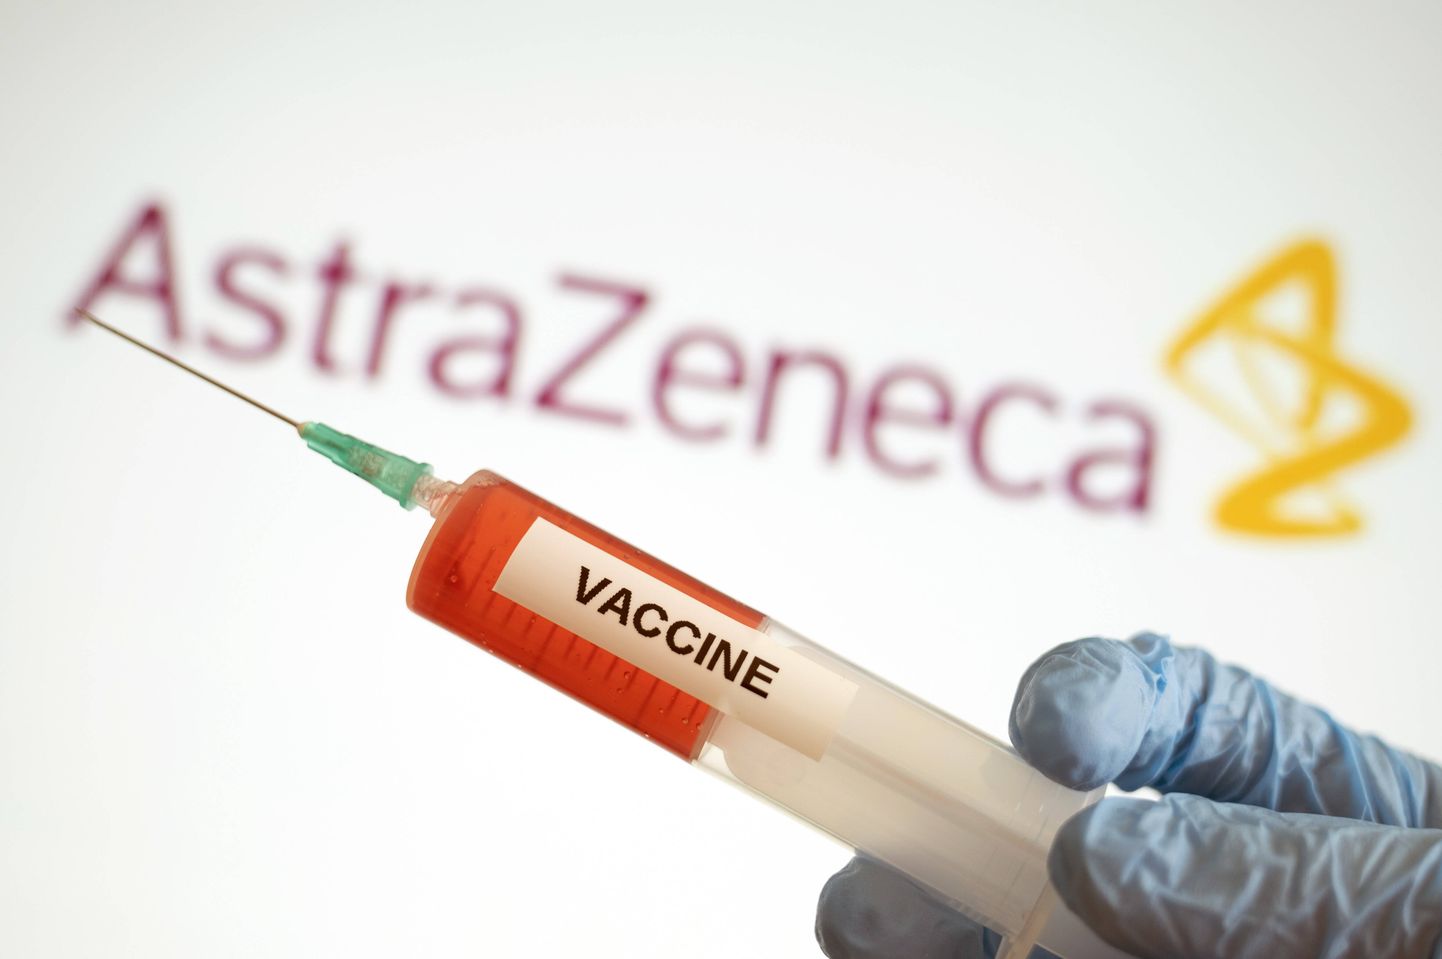 К клиническим испытаниям оксфордской вакцины компании Astra Zeneca привлечены почти 30 тысяч добровольцев.